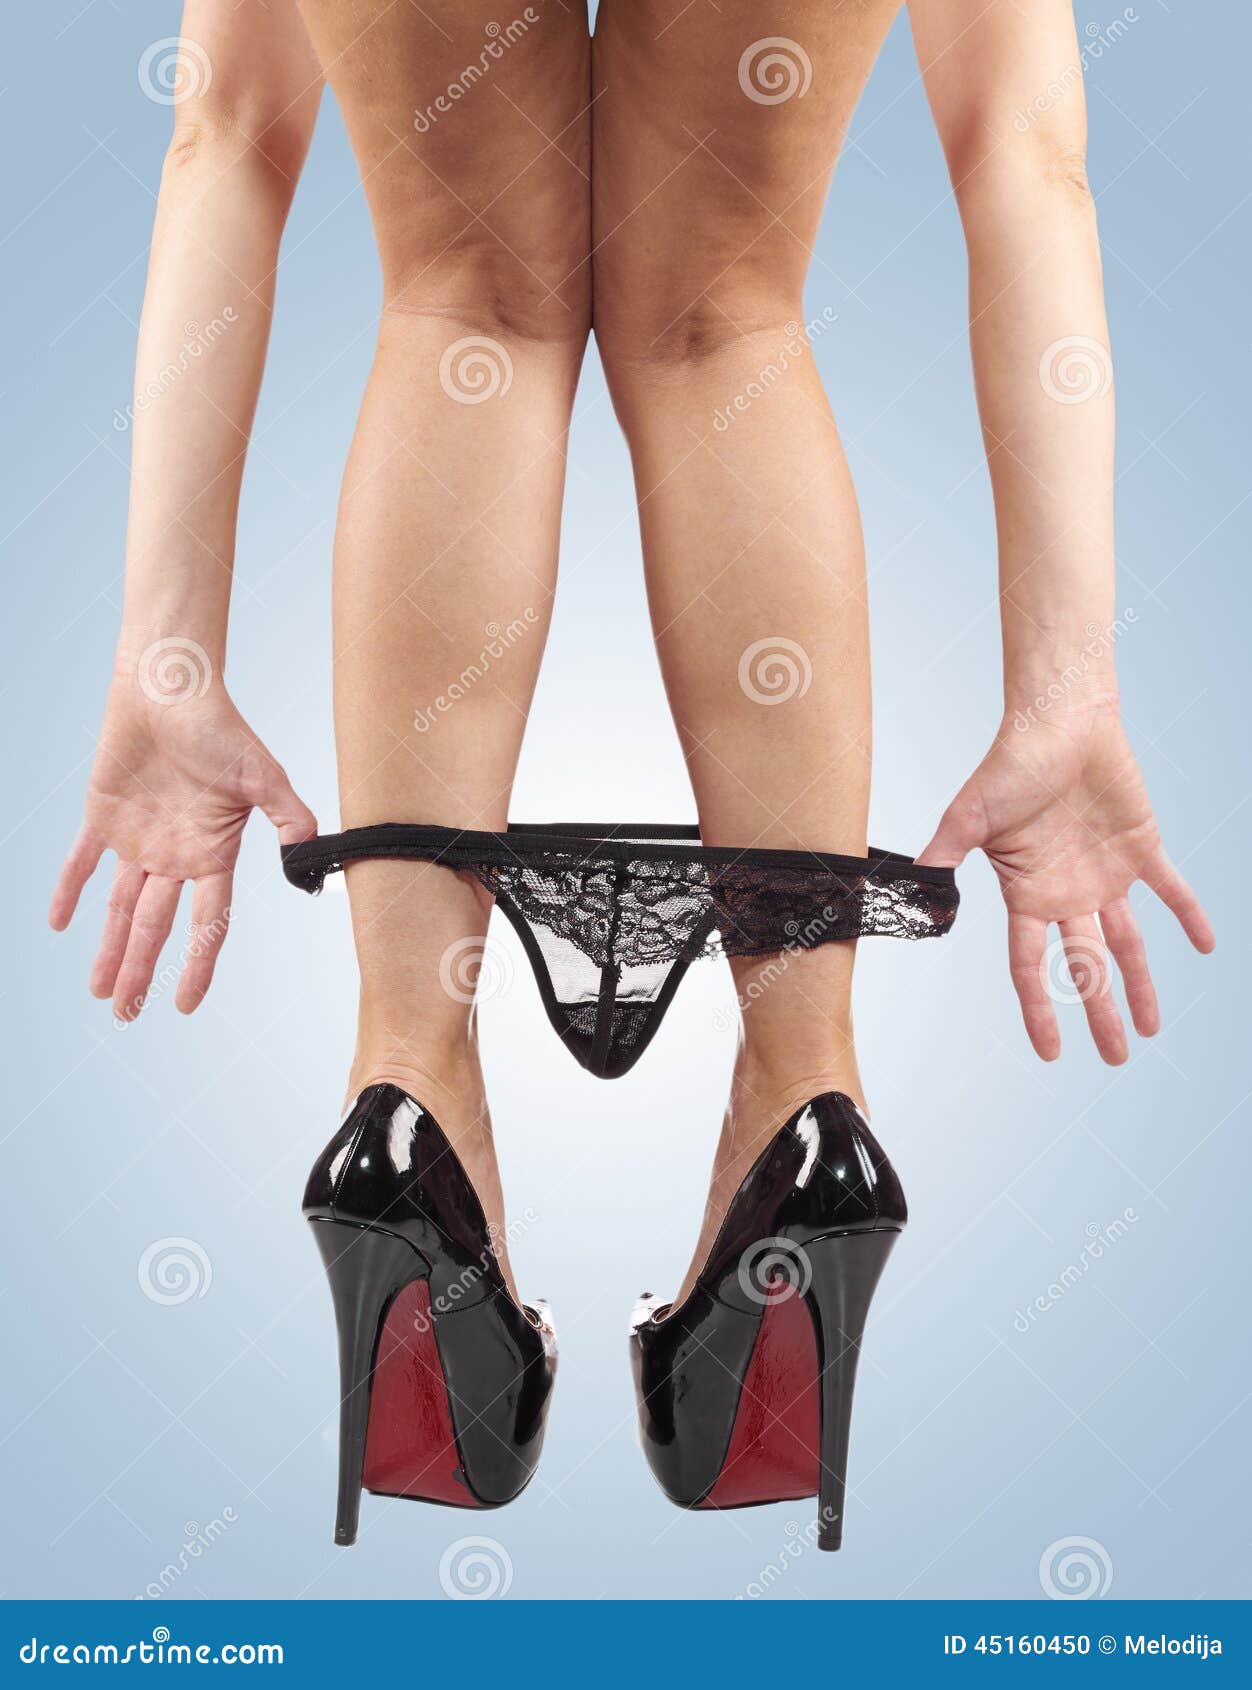 https://thumbs.dreamstime.com/z/sexy-legs-pulling-panties-down-black-red-bottom-high-heel-shoes-45160450.jpg